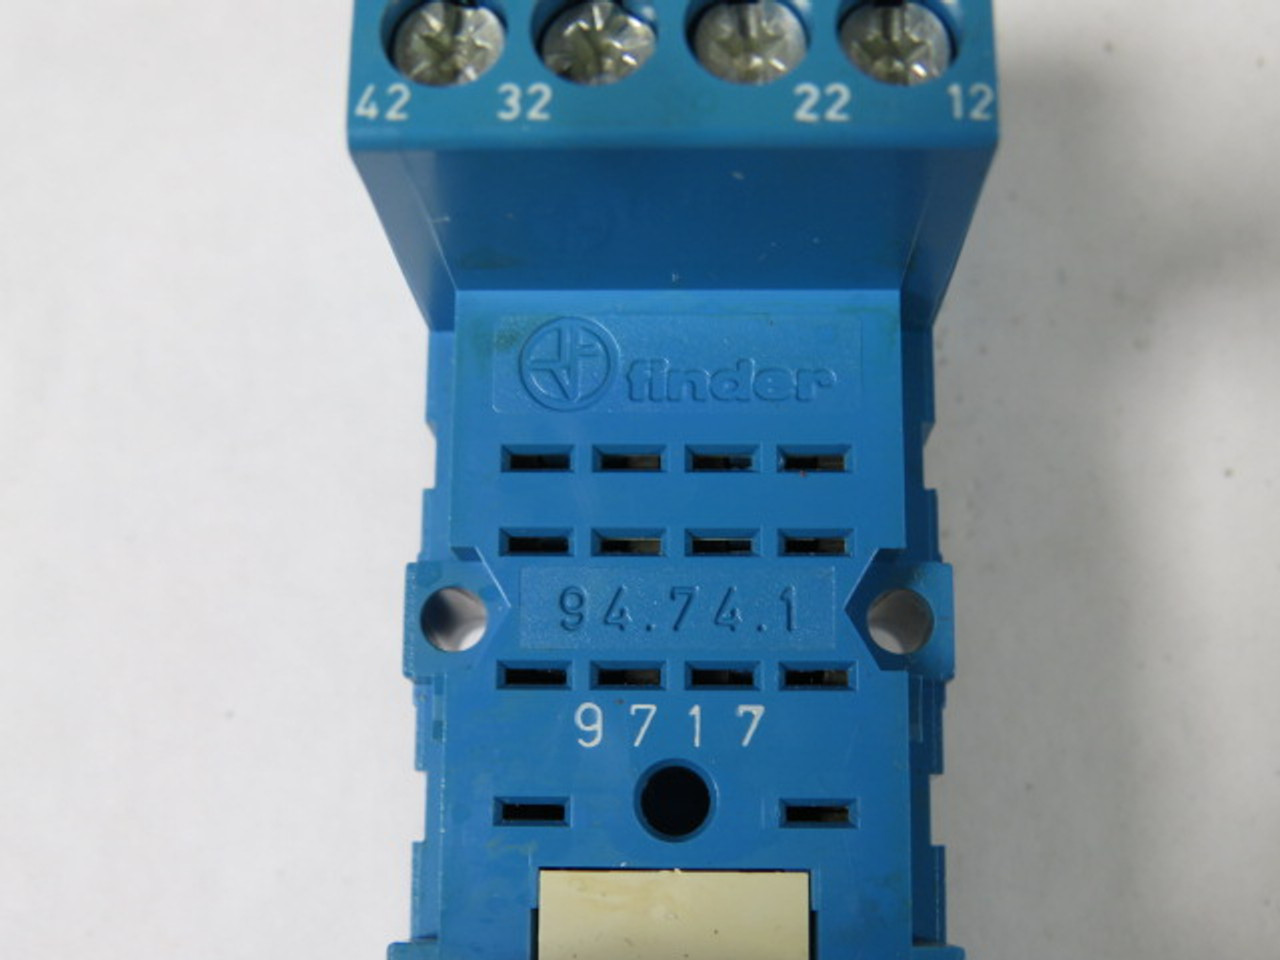 Finder 94.74.1 Relay Socket 10A 250V USED